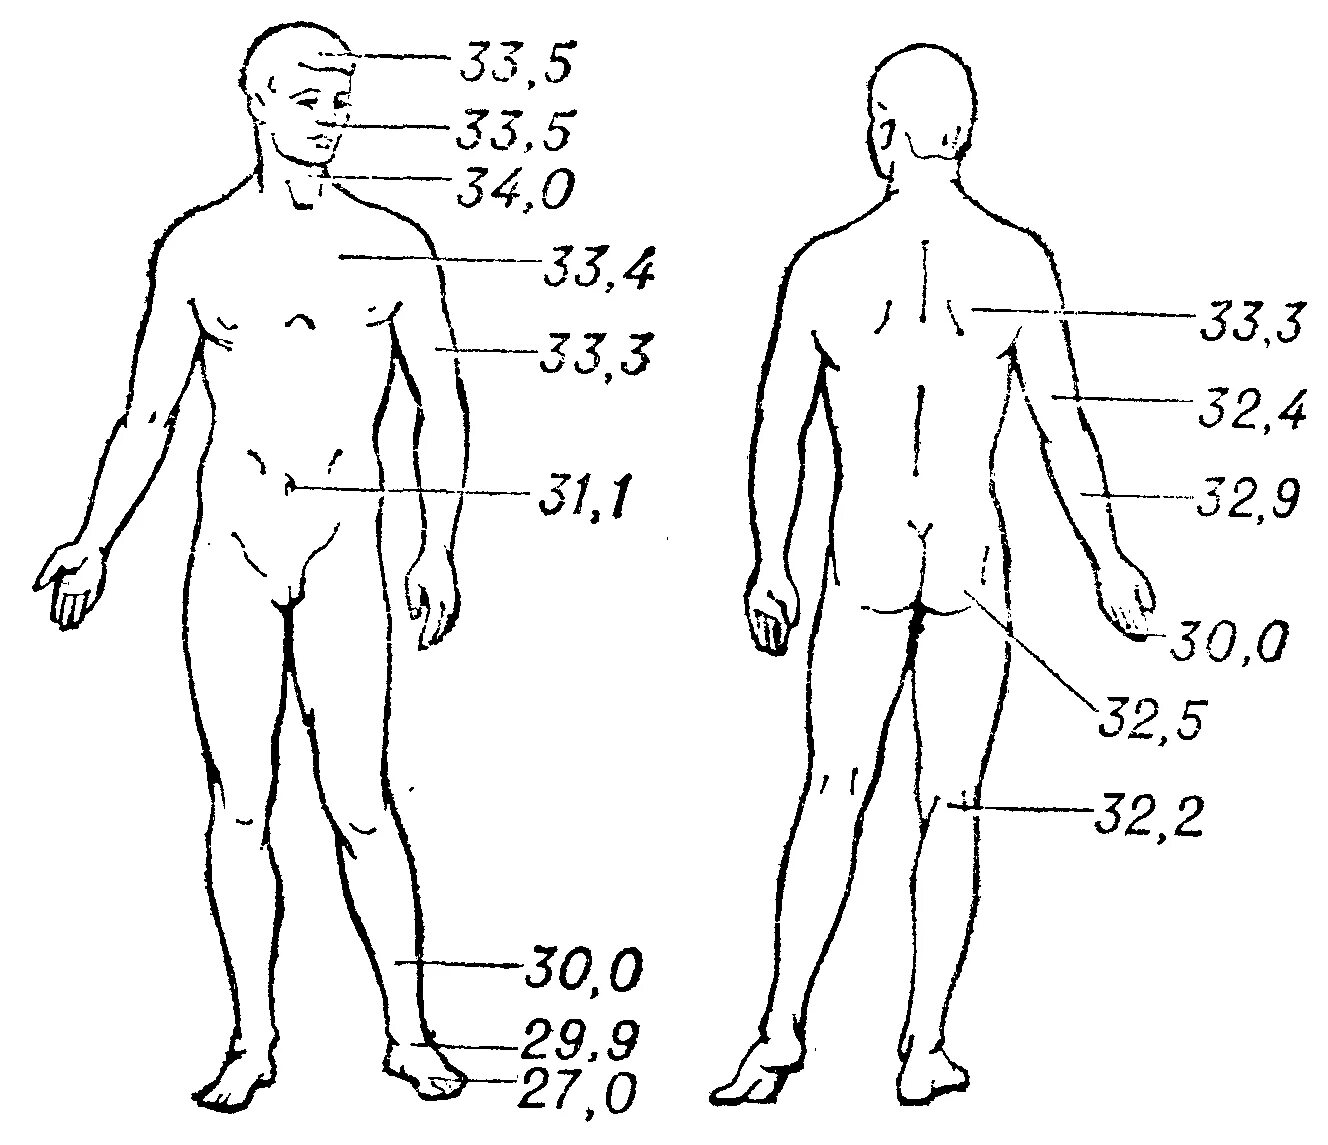 Градус температуры тела. Нормы поверхности температуры тела. Температура тела человека в разных частях тела. Температура тела на разных участках тела человека. Температурная схема тела человека.